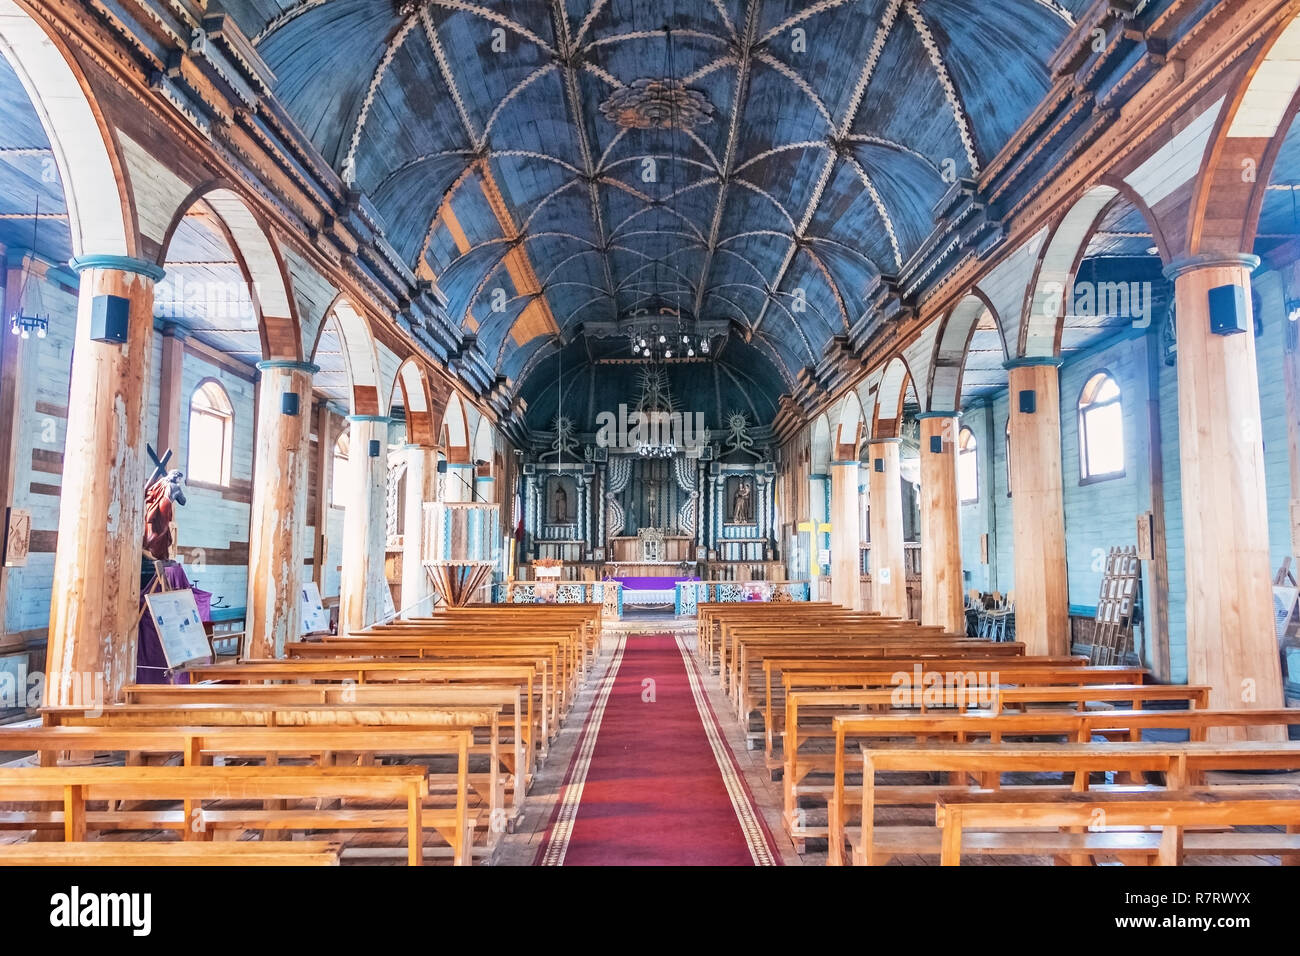 Church of Achao interior - Chiloe Island, Chile Stock Photo